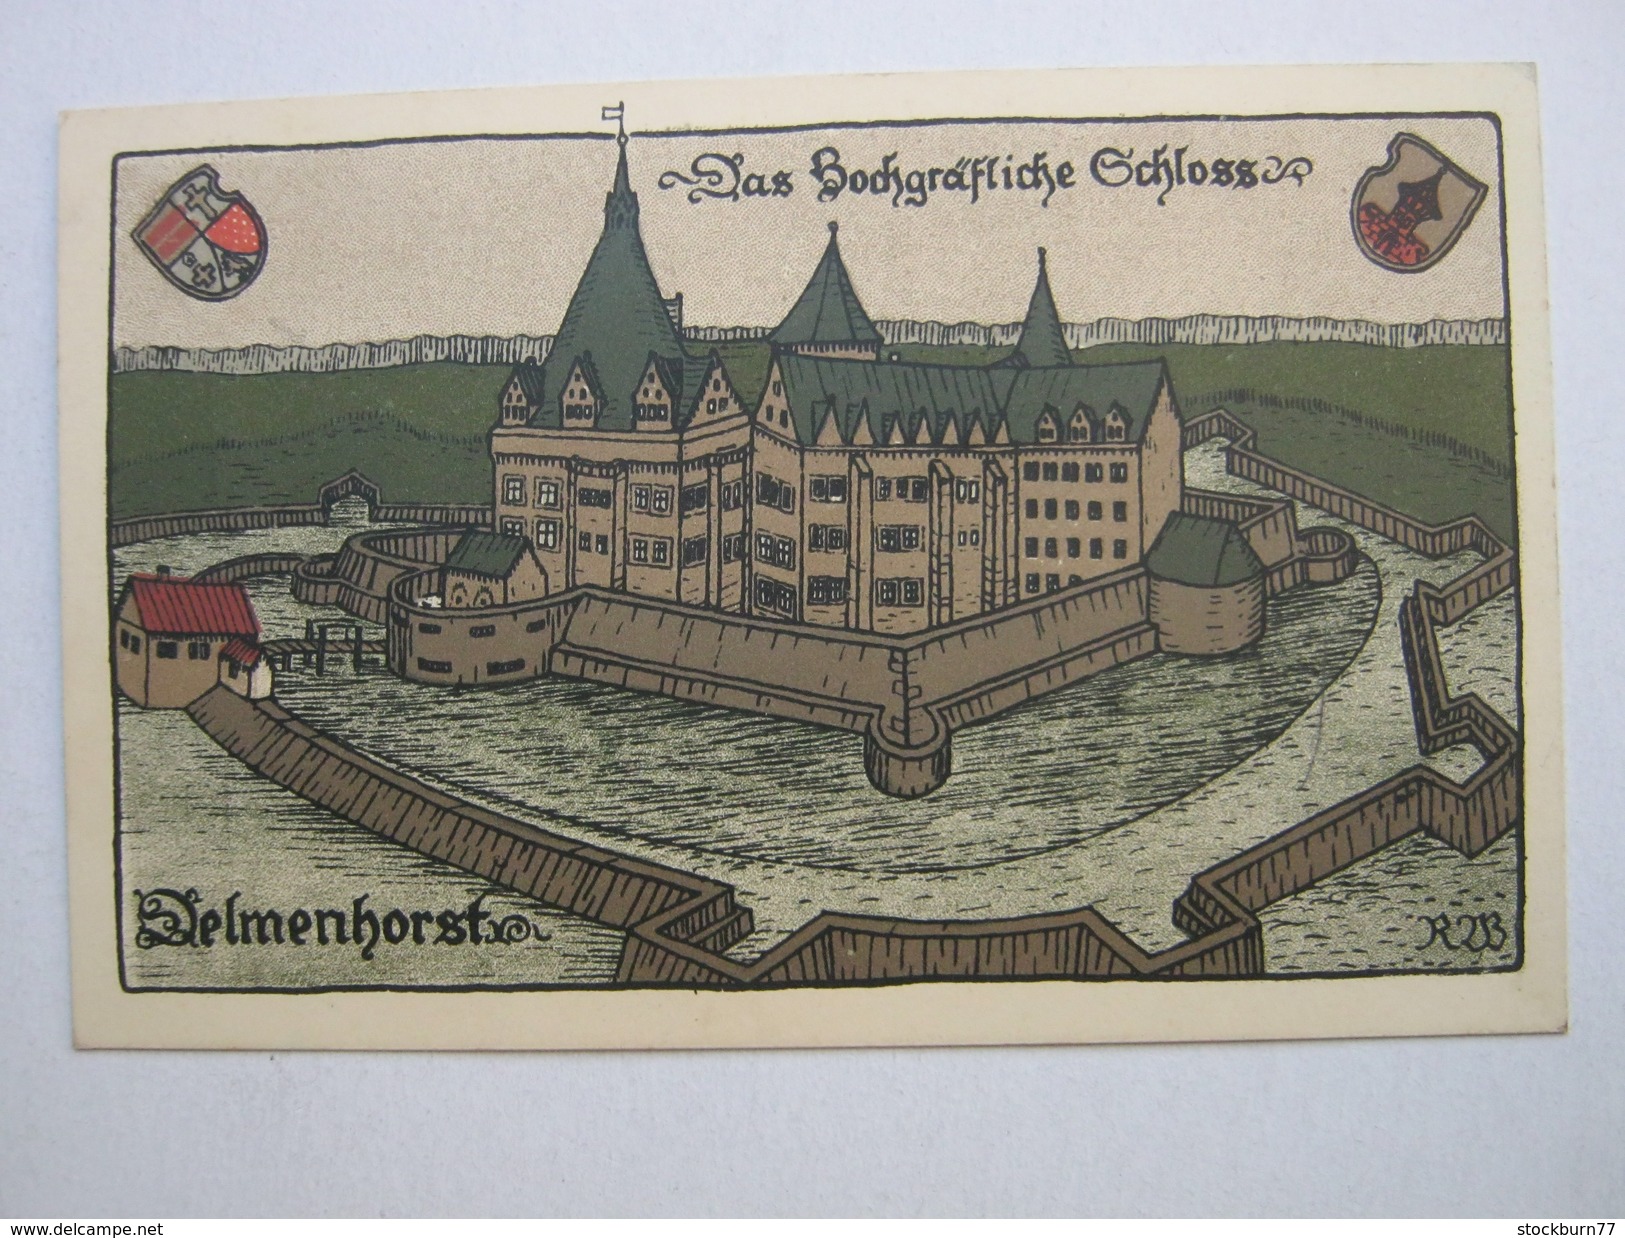 DELMENHORST , Steindruckkarte    , Schöne Karte   ,verschickt  ,   2  Scans - Delmenhorst